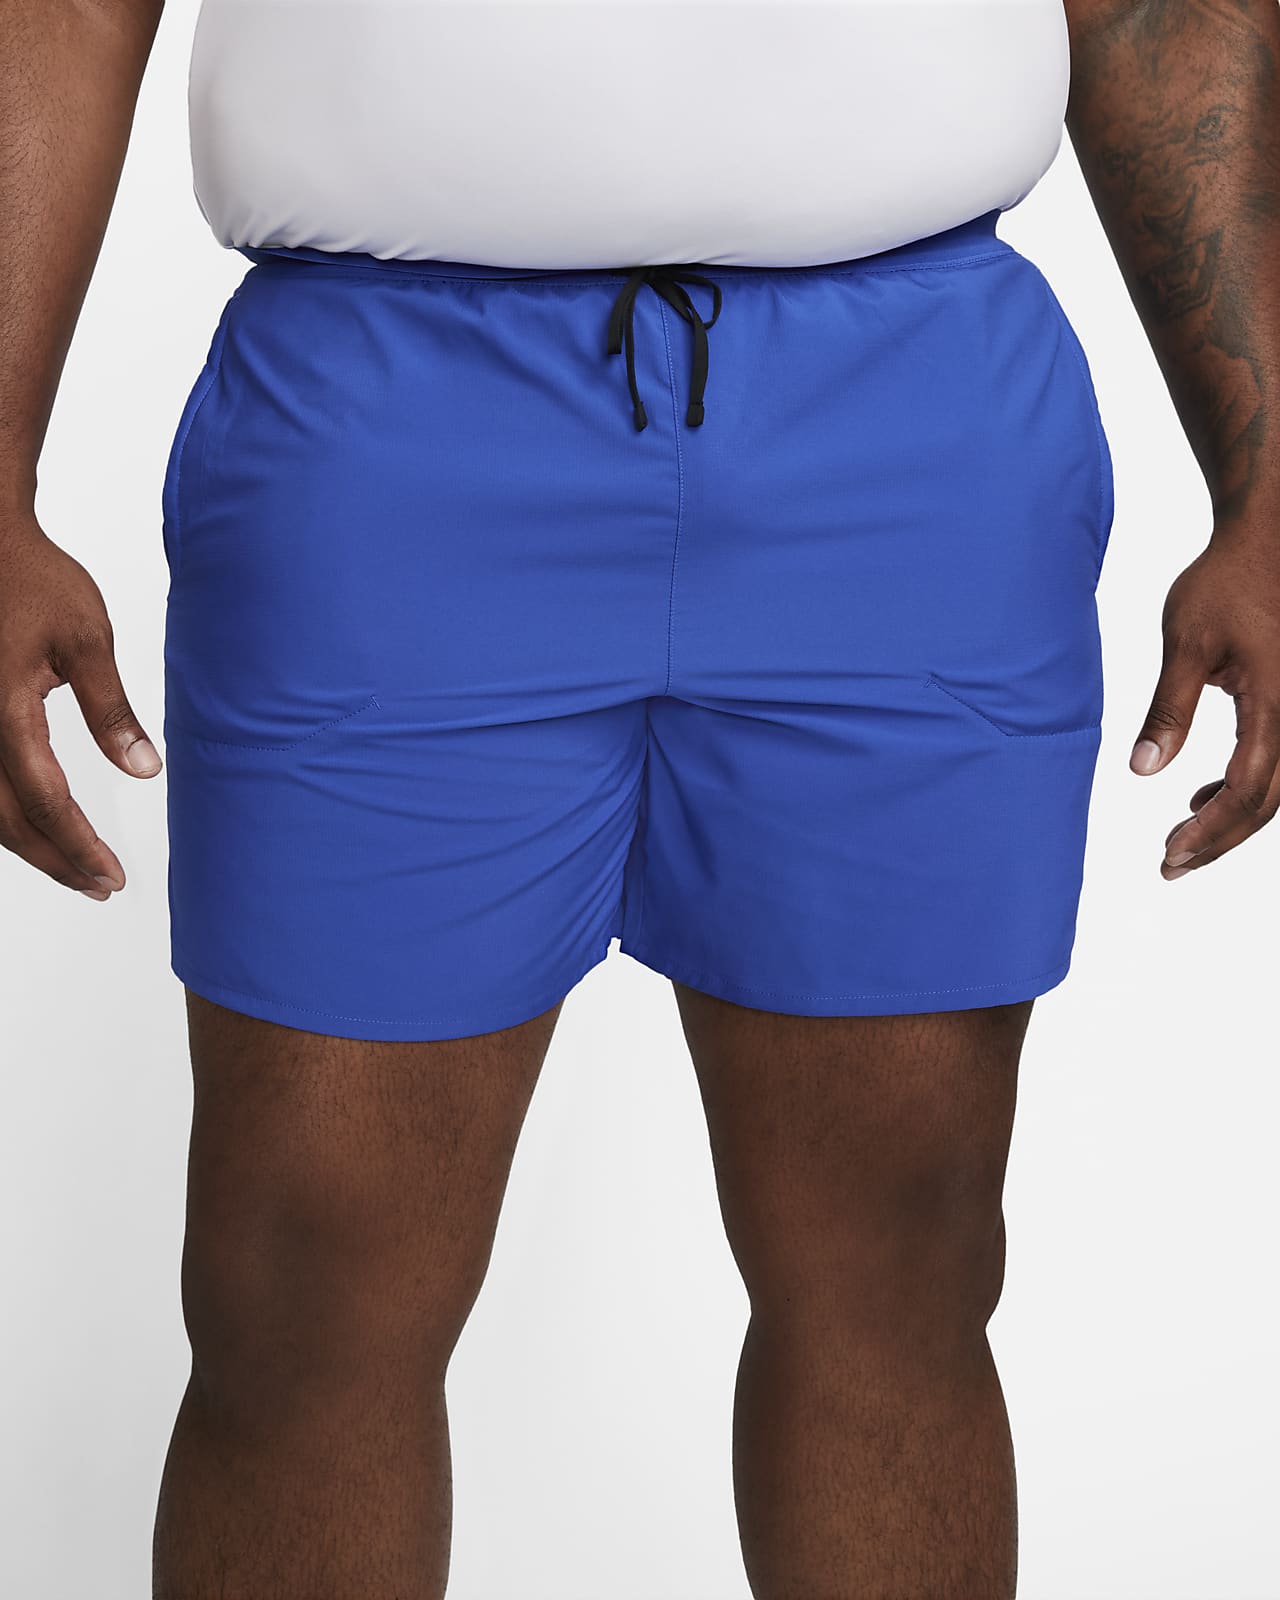 Nike Running Shorts Built In Underwear Aqua Green Girls Size Medium  910930-430